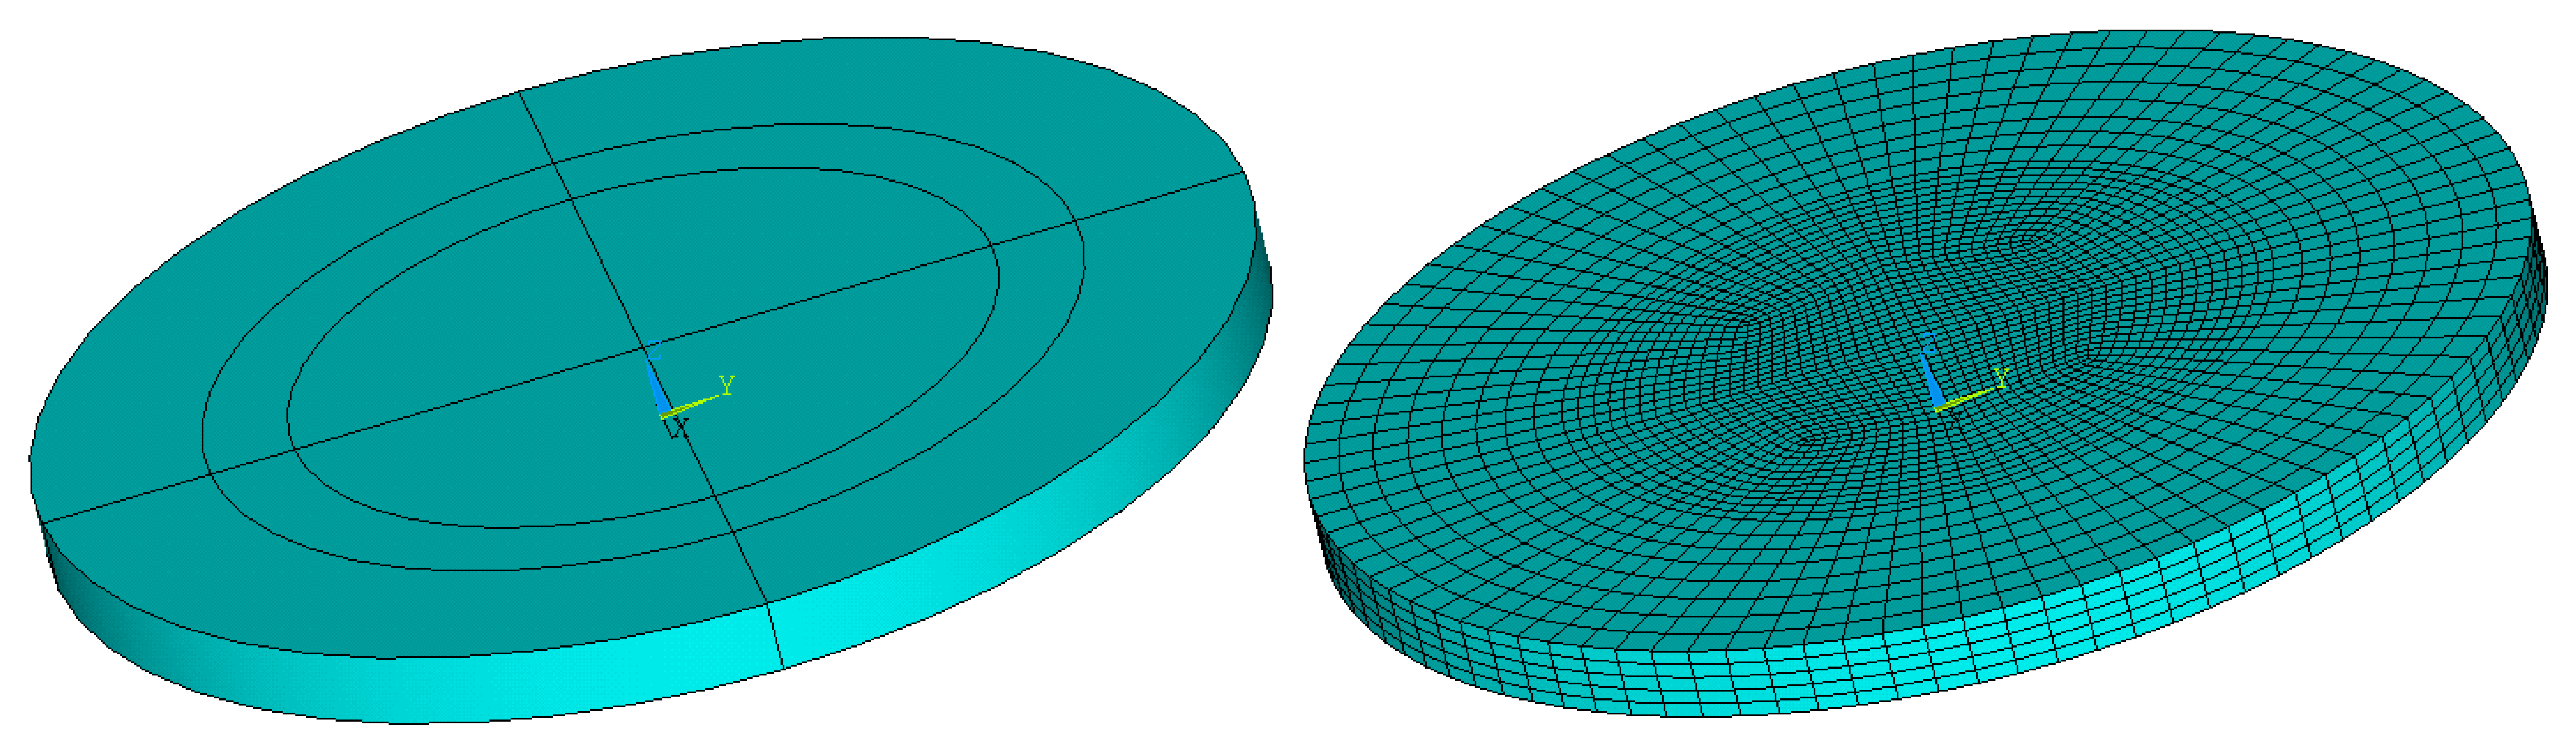 Vzhledem k rotační symetrii je možné pro tento typ rezonátoru použít D osově symetrický model.